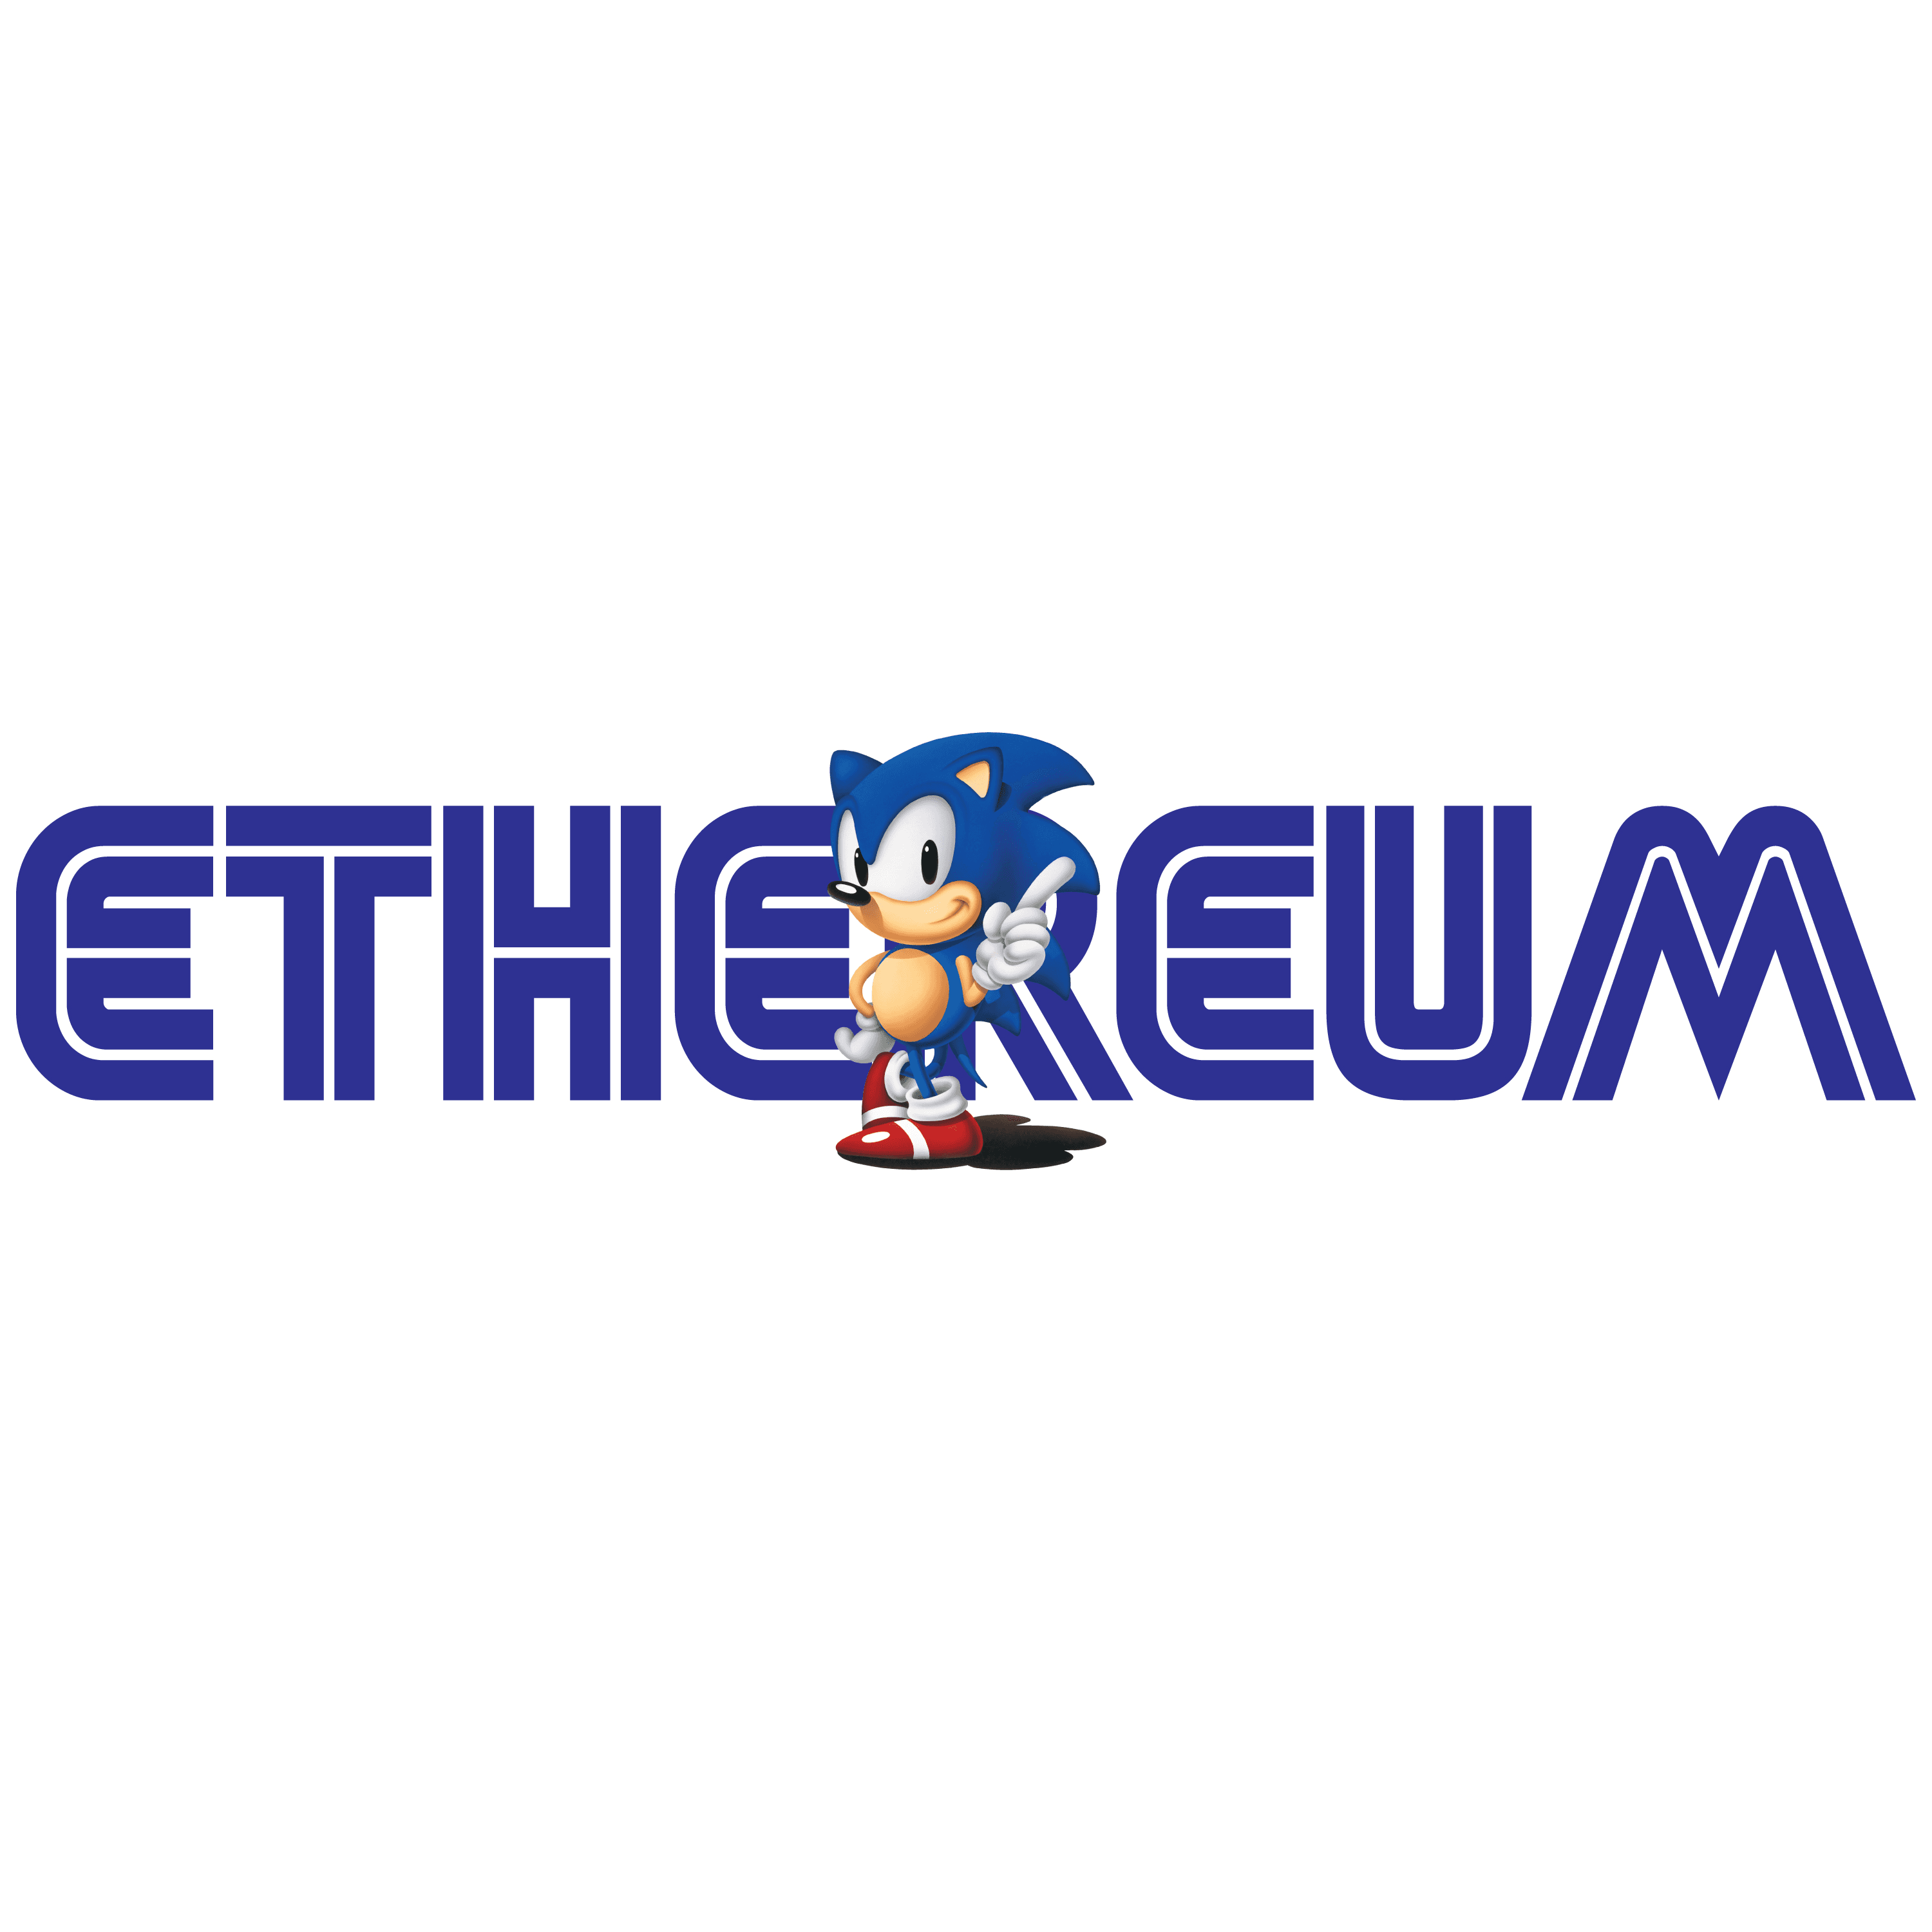 Ethereum the Hedgehog